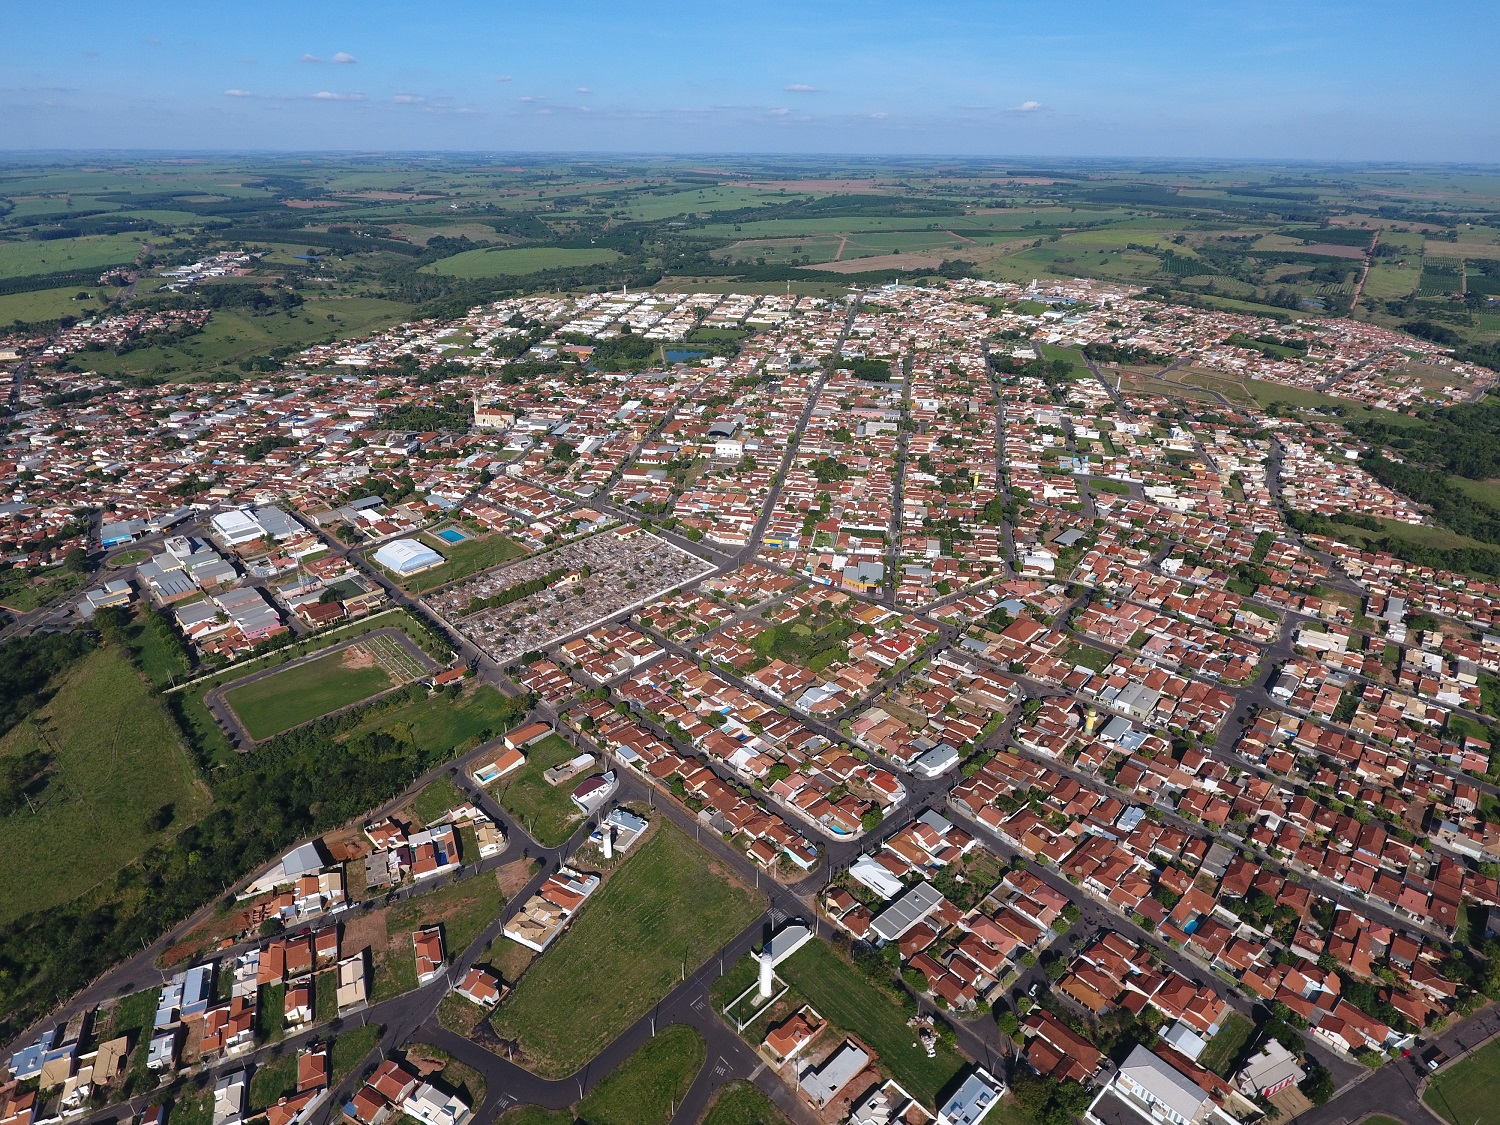 Foto aérea de Urupês. Imagem: divulgação.